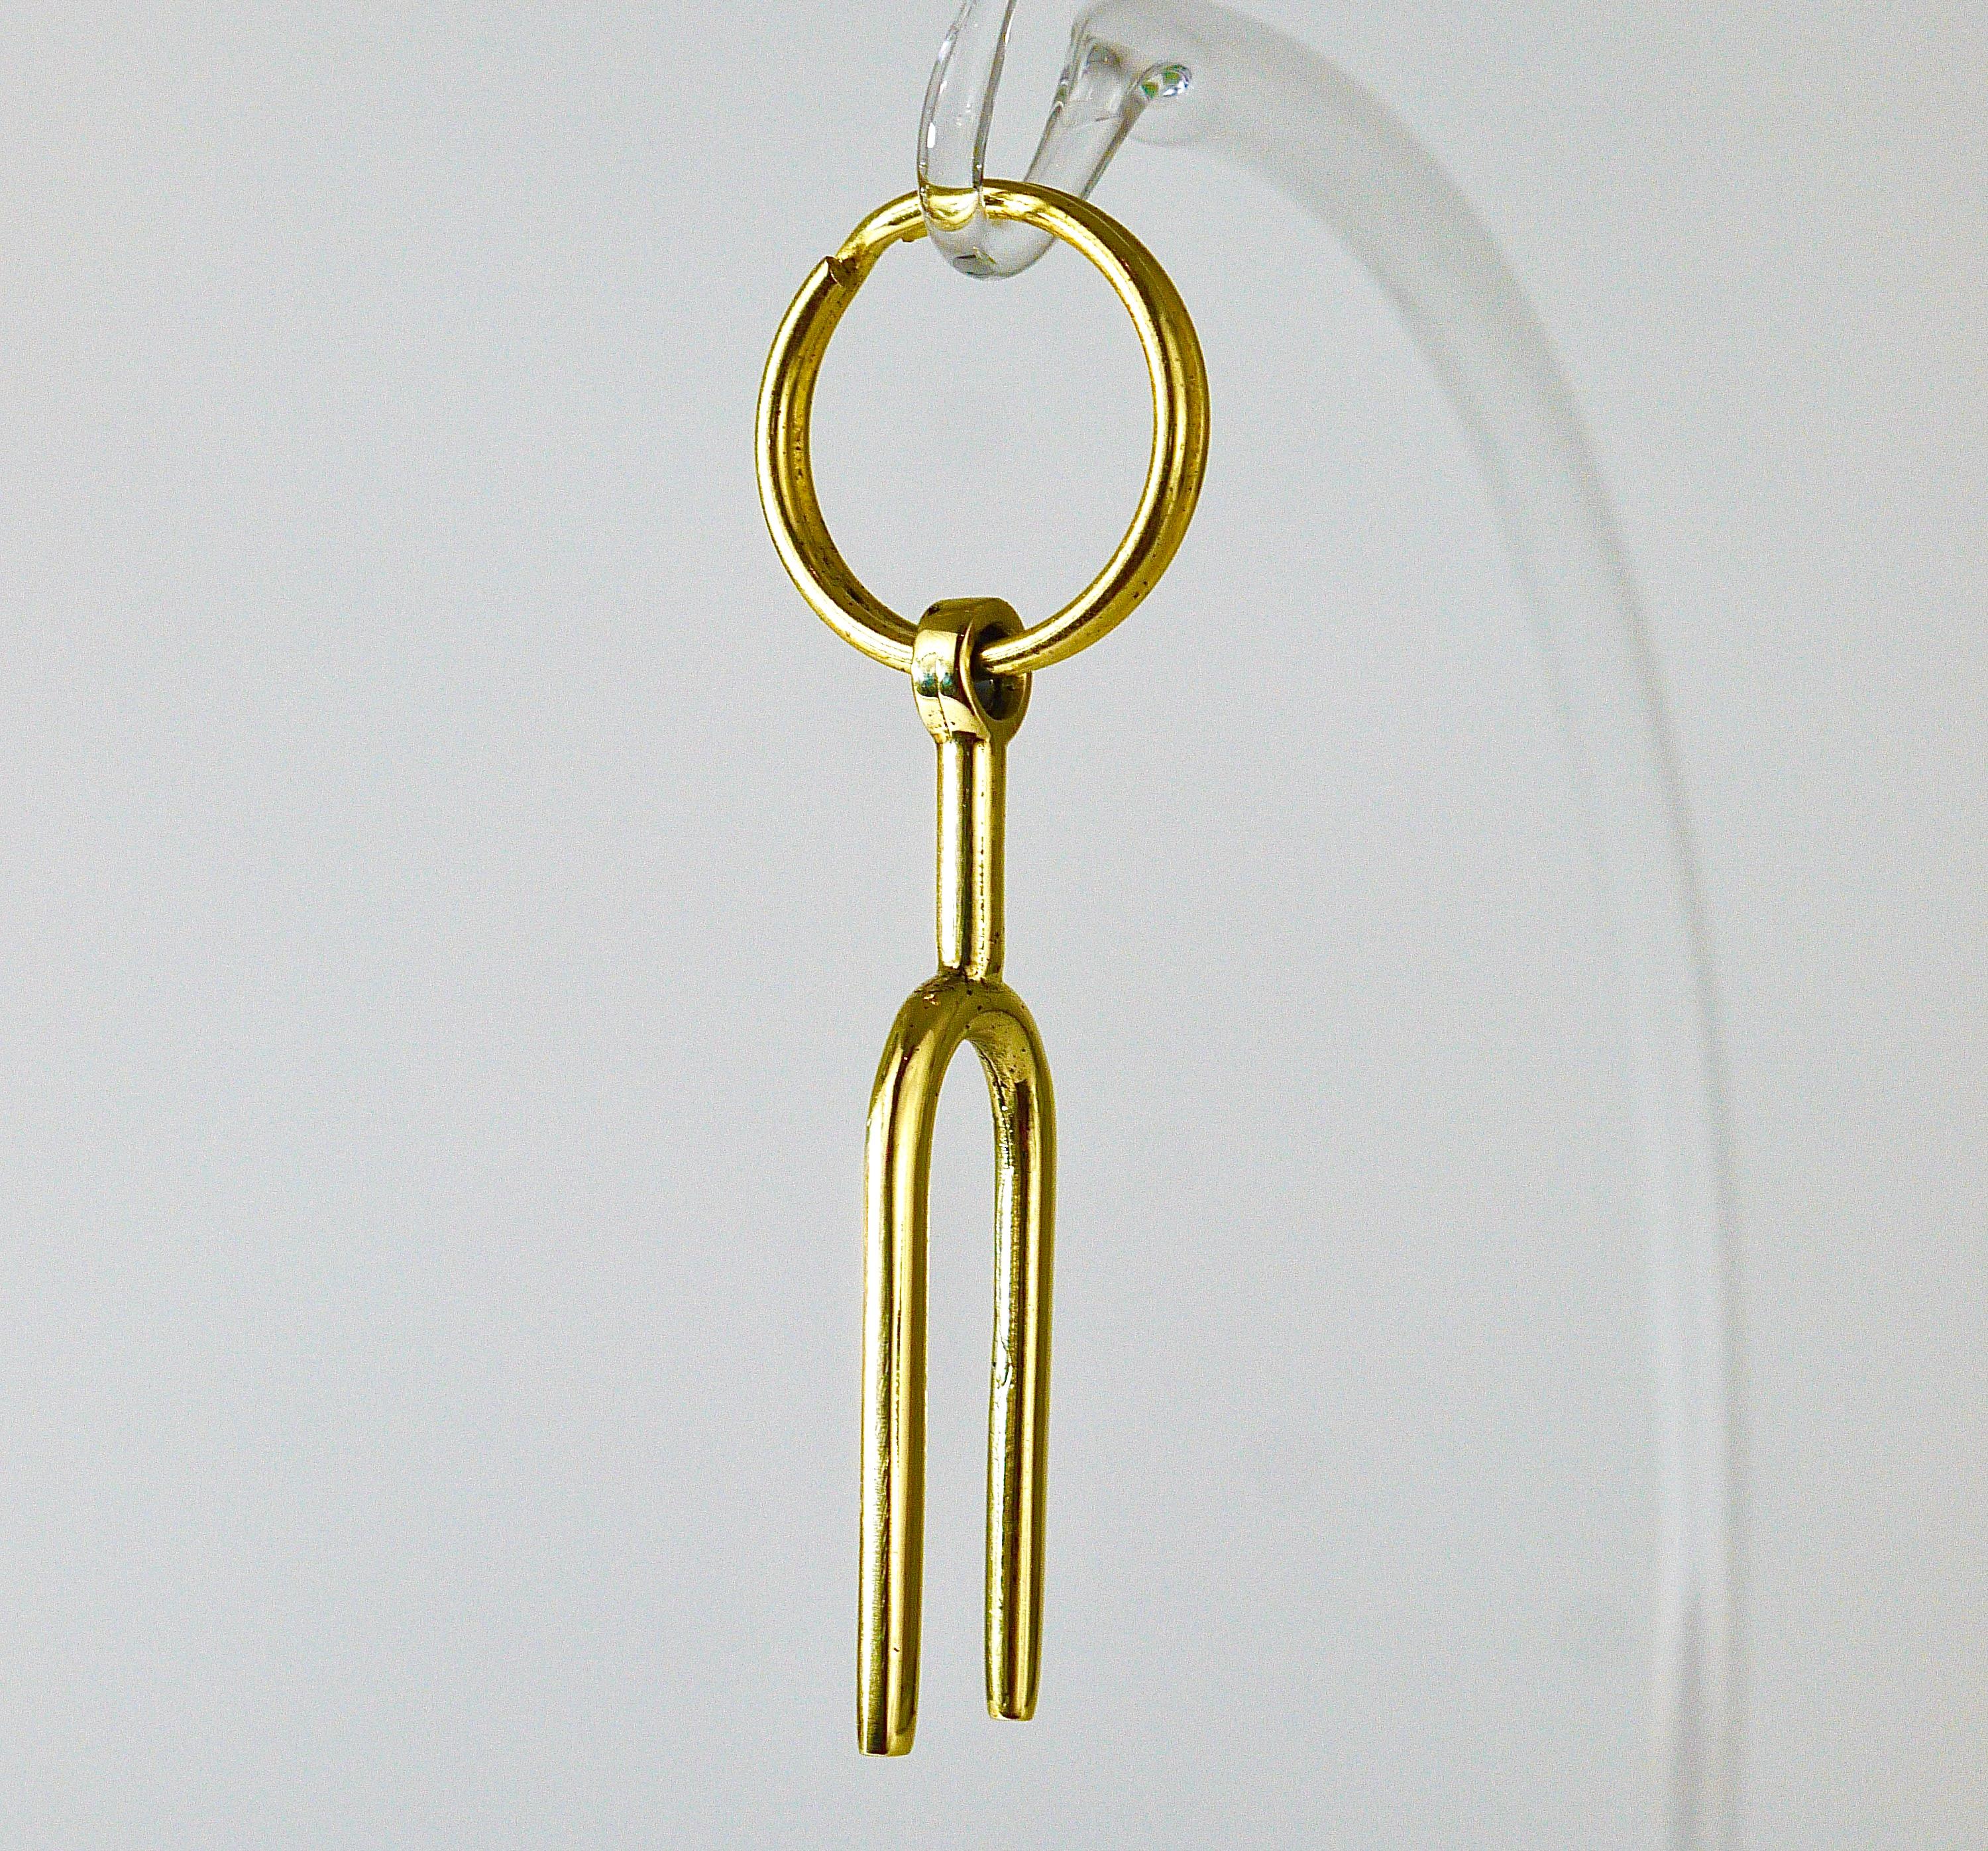 Austrian Carl Auböck Midcentury Tuning Fork Handmade Key Ring Chain Holder For Sale